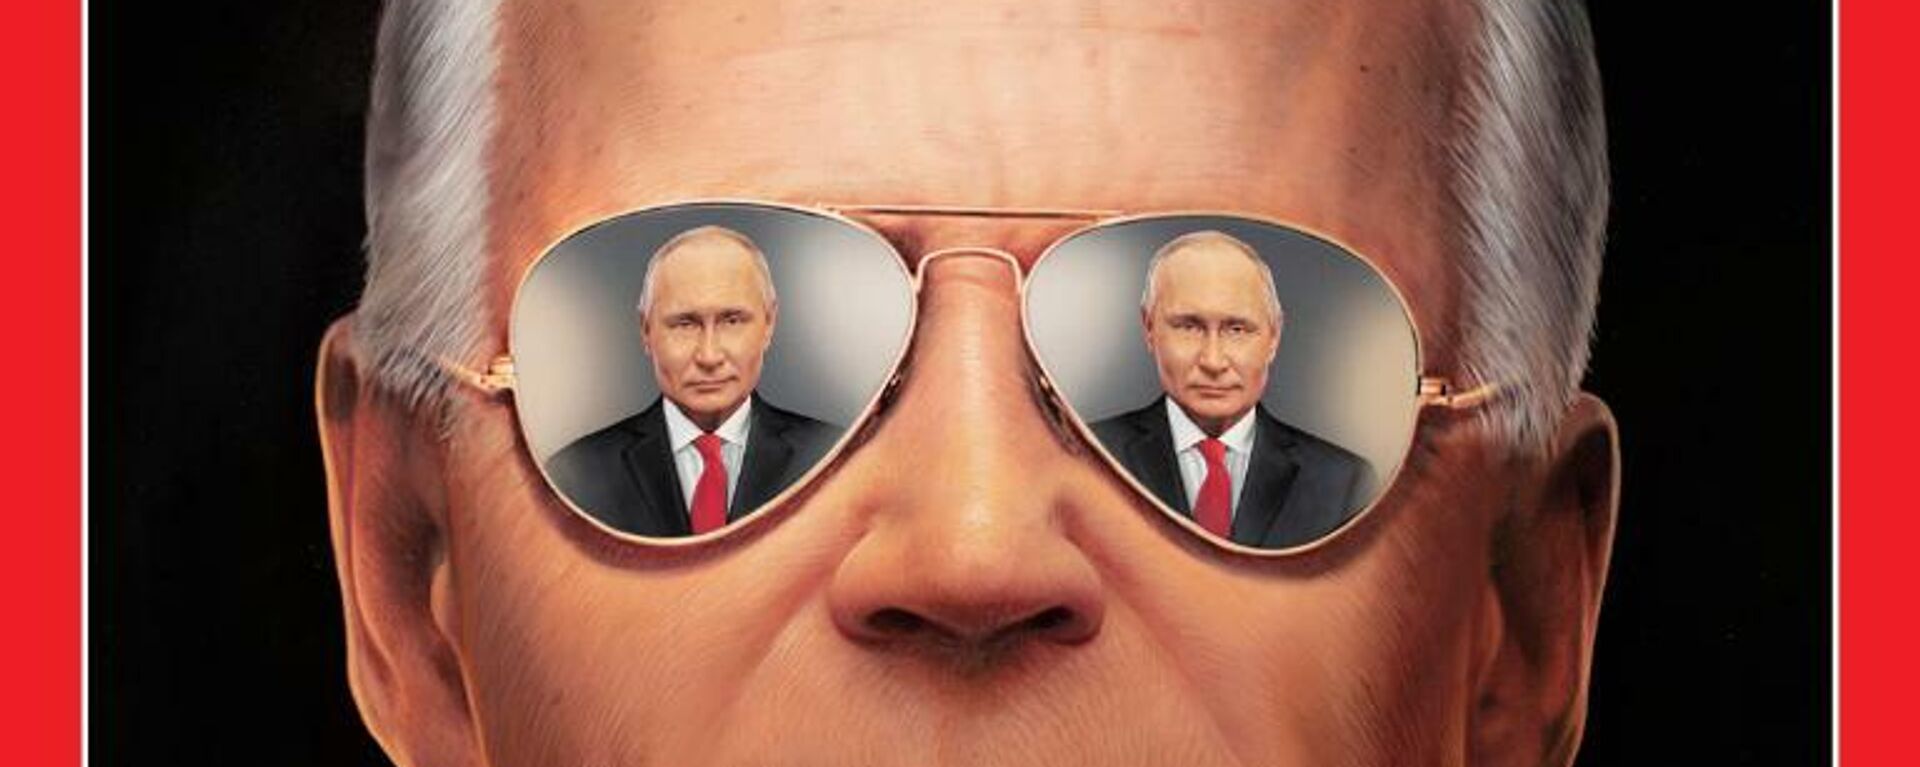 La revista Time pone en su portada a Biden con la mirada en Putin - Sputnik Mundo, 1920, 11.06.2021